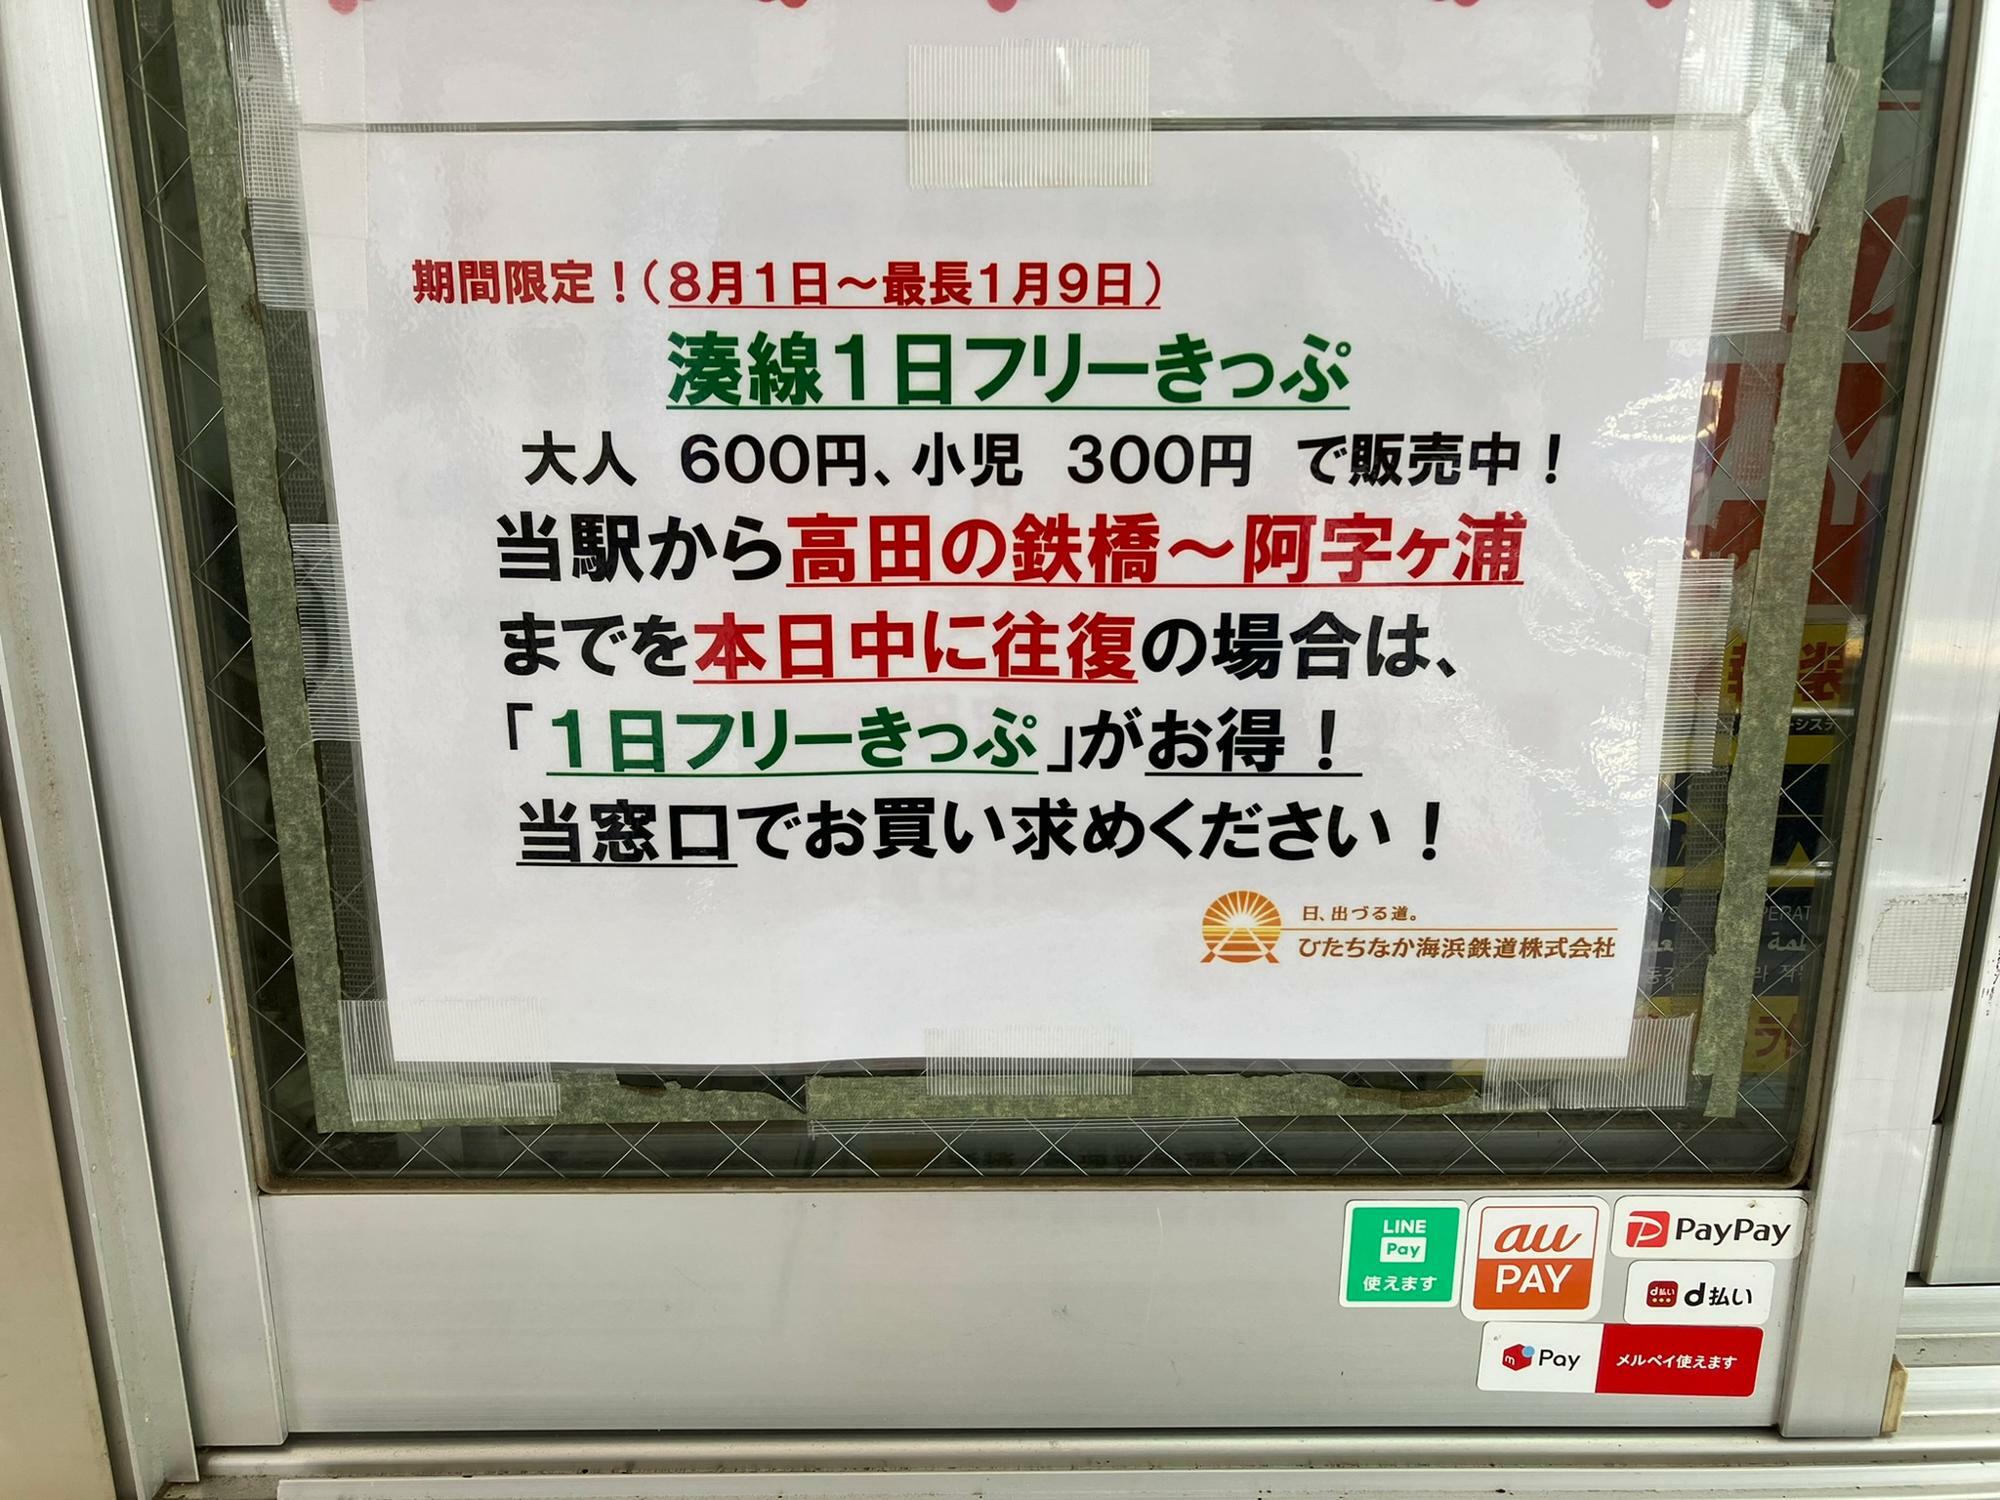 ひたちなか海浜鉄道の勝田駅窓口には、期間限定でフリー切符が割引となる案内が掲示されていた（筆者撮影）